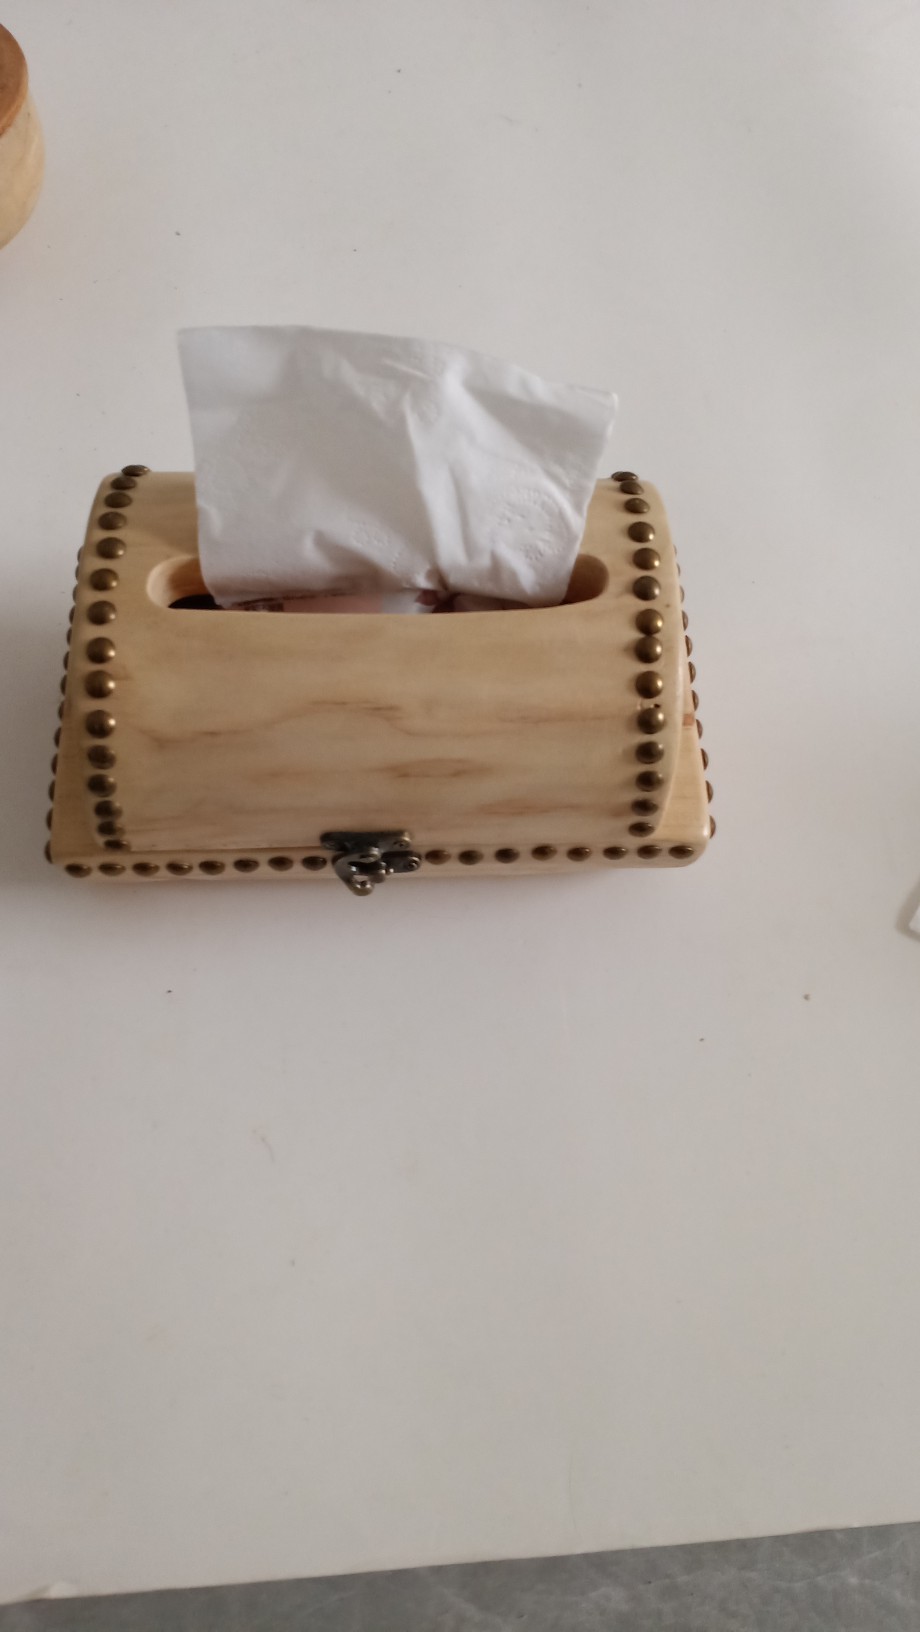 纸巾盒木复古翻盖式收纳箱整理化妆品钥匙零钱生活小物品包邮